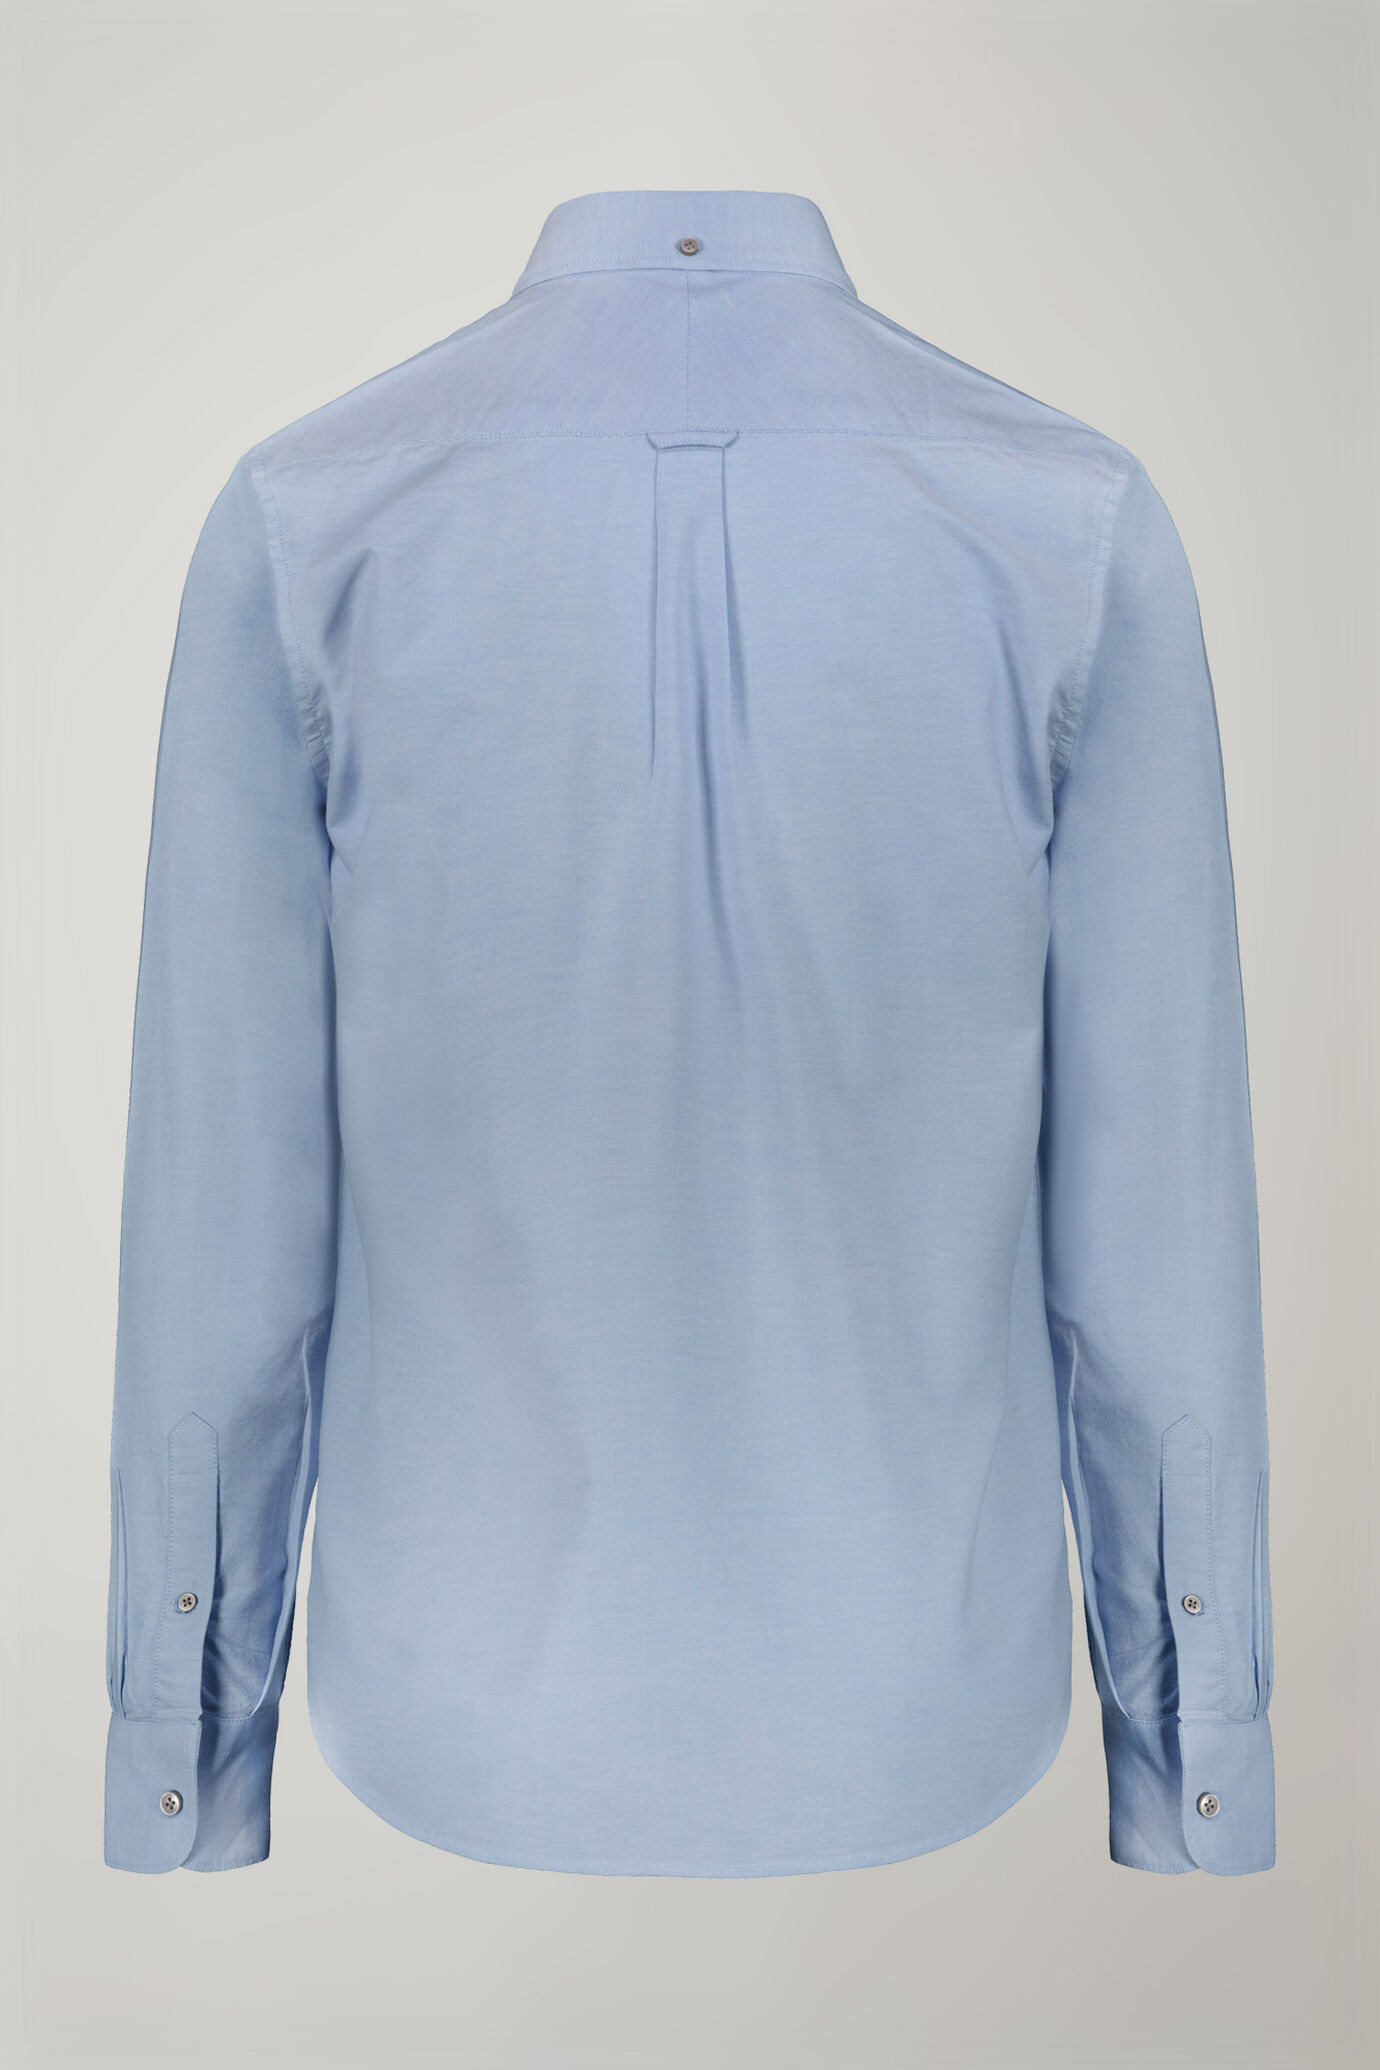 Camicia classica uomo collo button down tessuto Oxford rigato ultra leggero tinta unita comfort fit image number 5